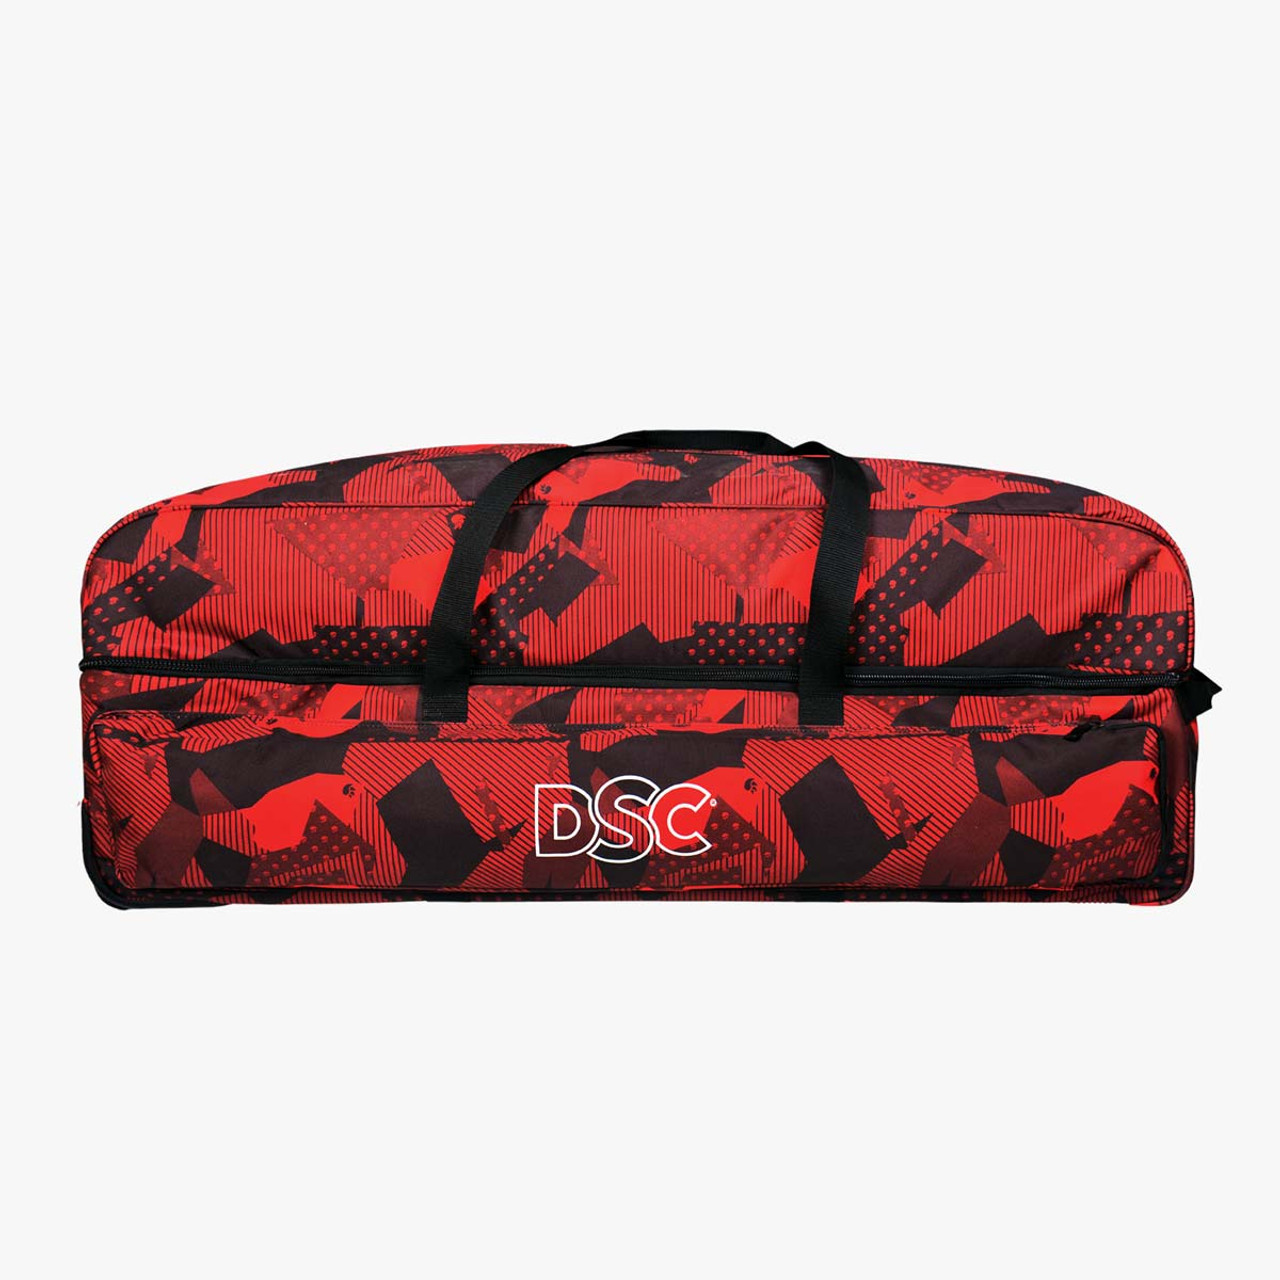 DSC Cricket Kit Bag Rebels Duffle | centenariocat.upeu.edu.pe